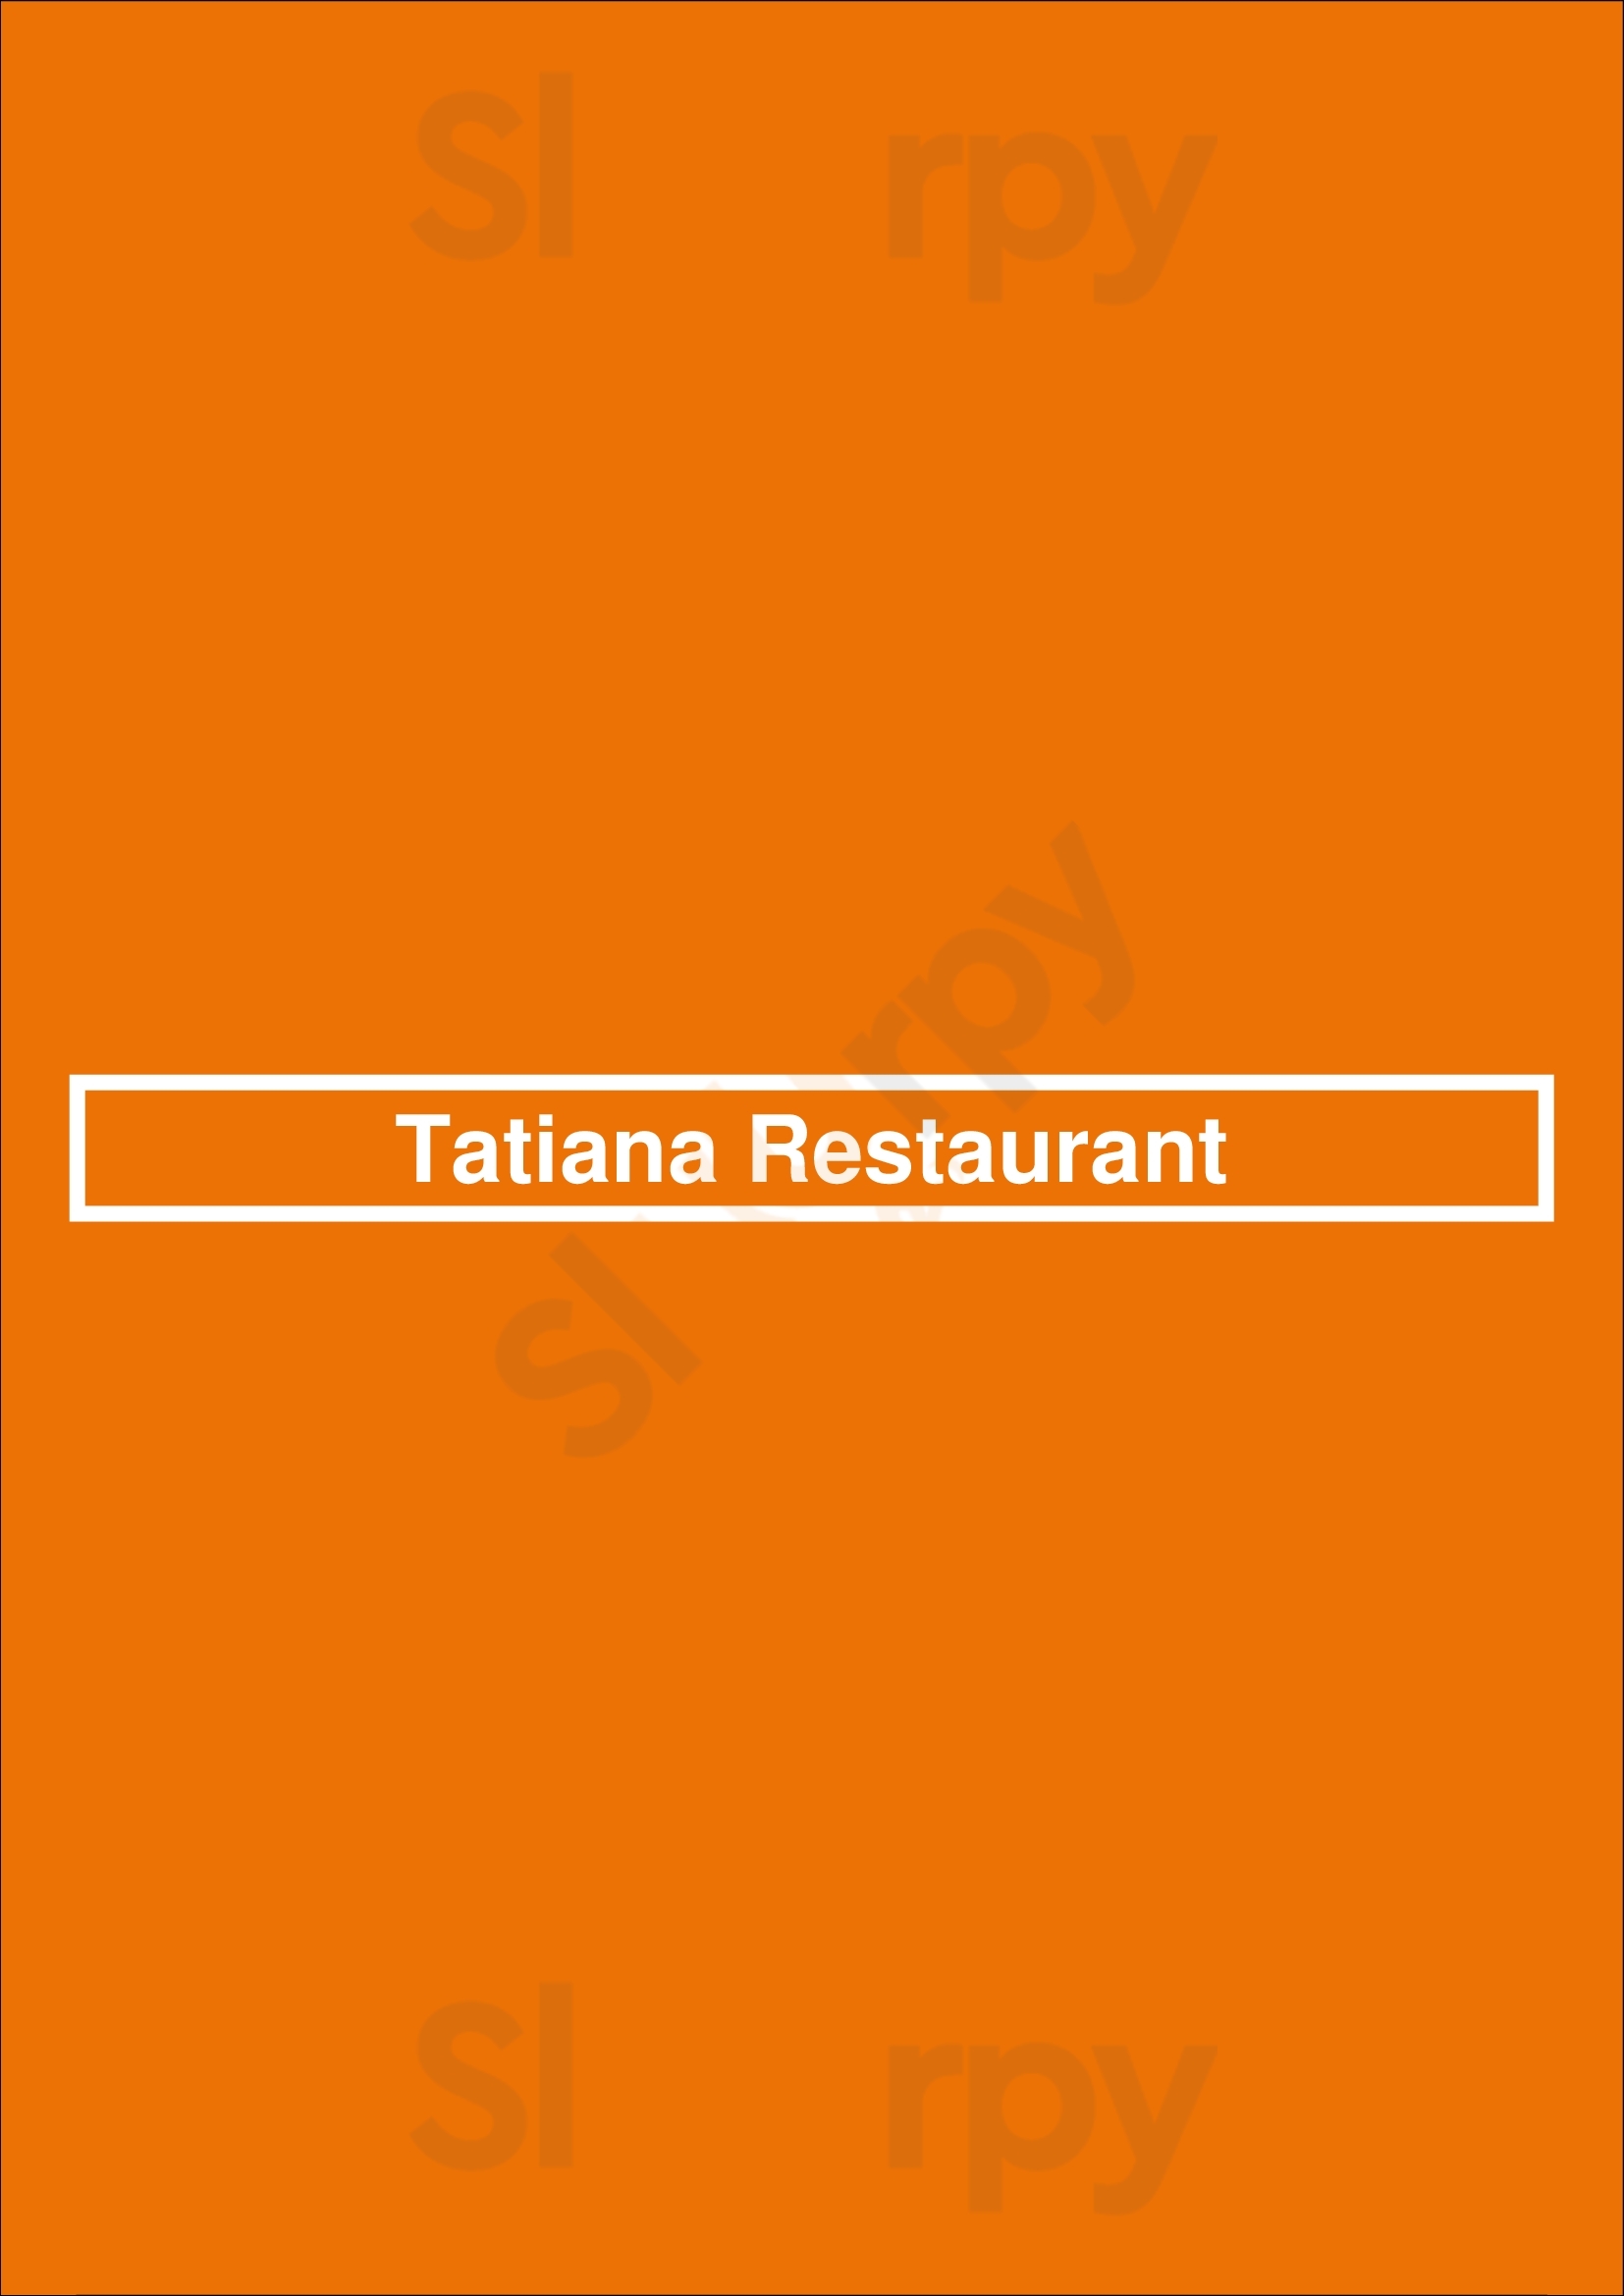 Tatiana Restaurant Brooklyn Menu - 1